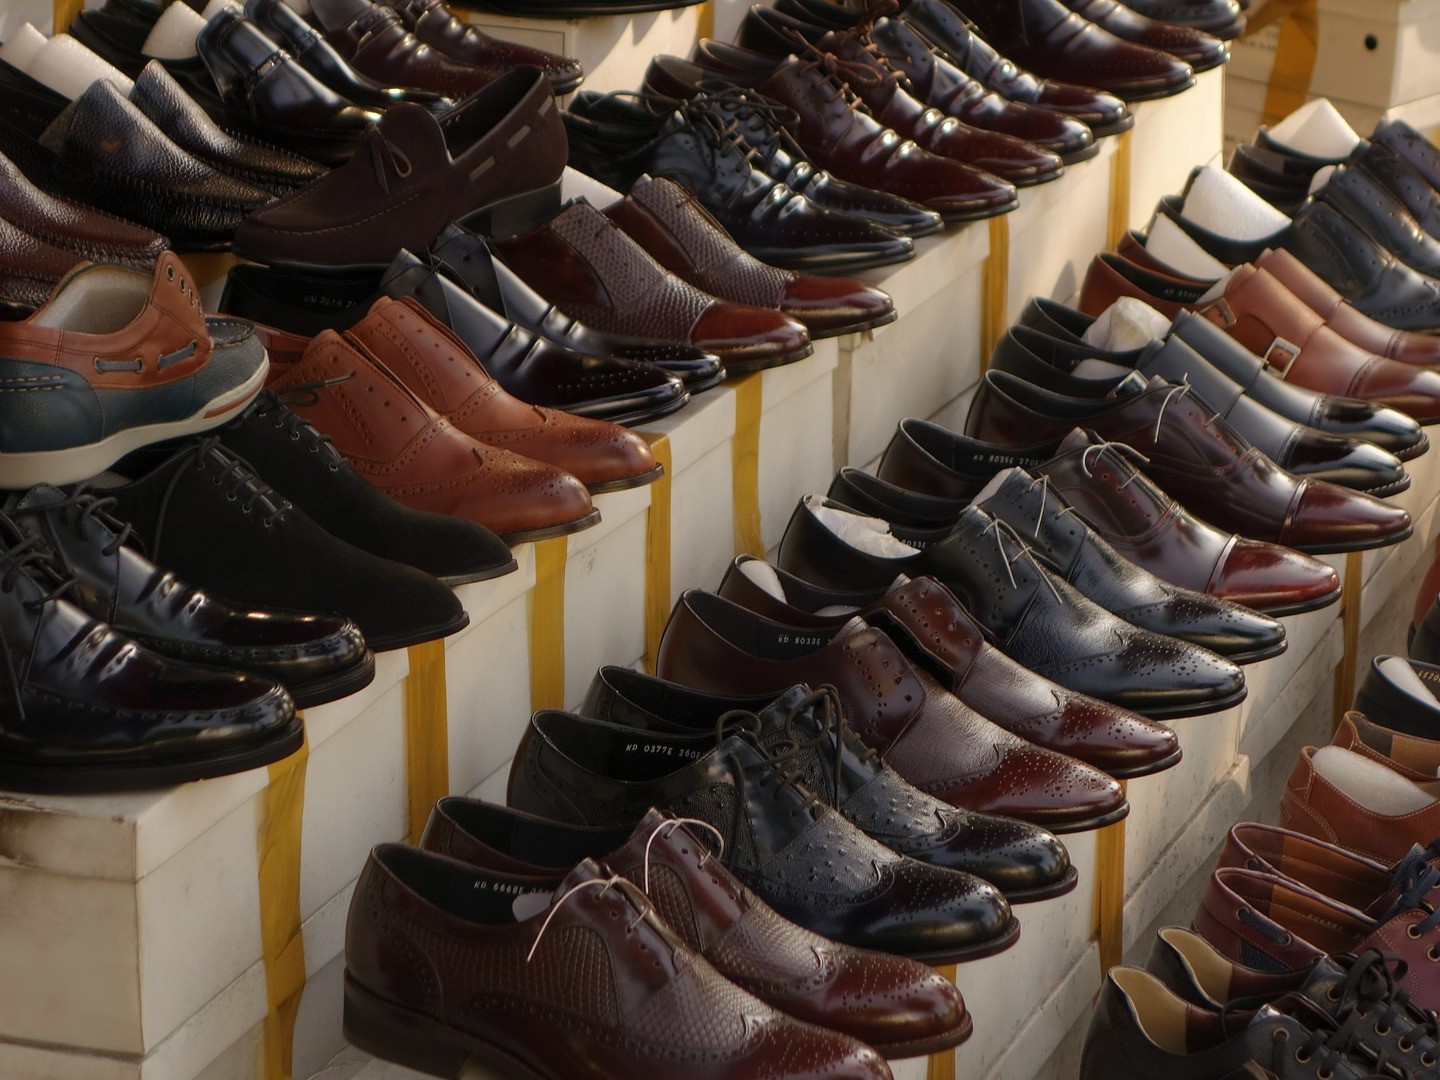 Românii au cheltuit 1,2 mld. euro pe pantofi anul trecut, piaţa crescând cu 8,5%, susţinută de online. Pandemia a întrerupt brusc trendul ascendent, iar cifrele pentru 2020 sunt incerte